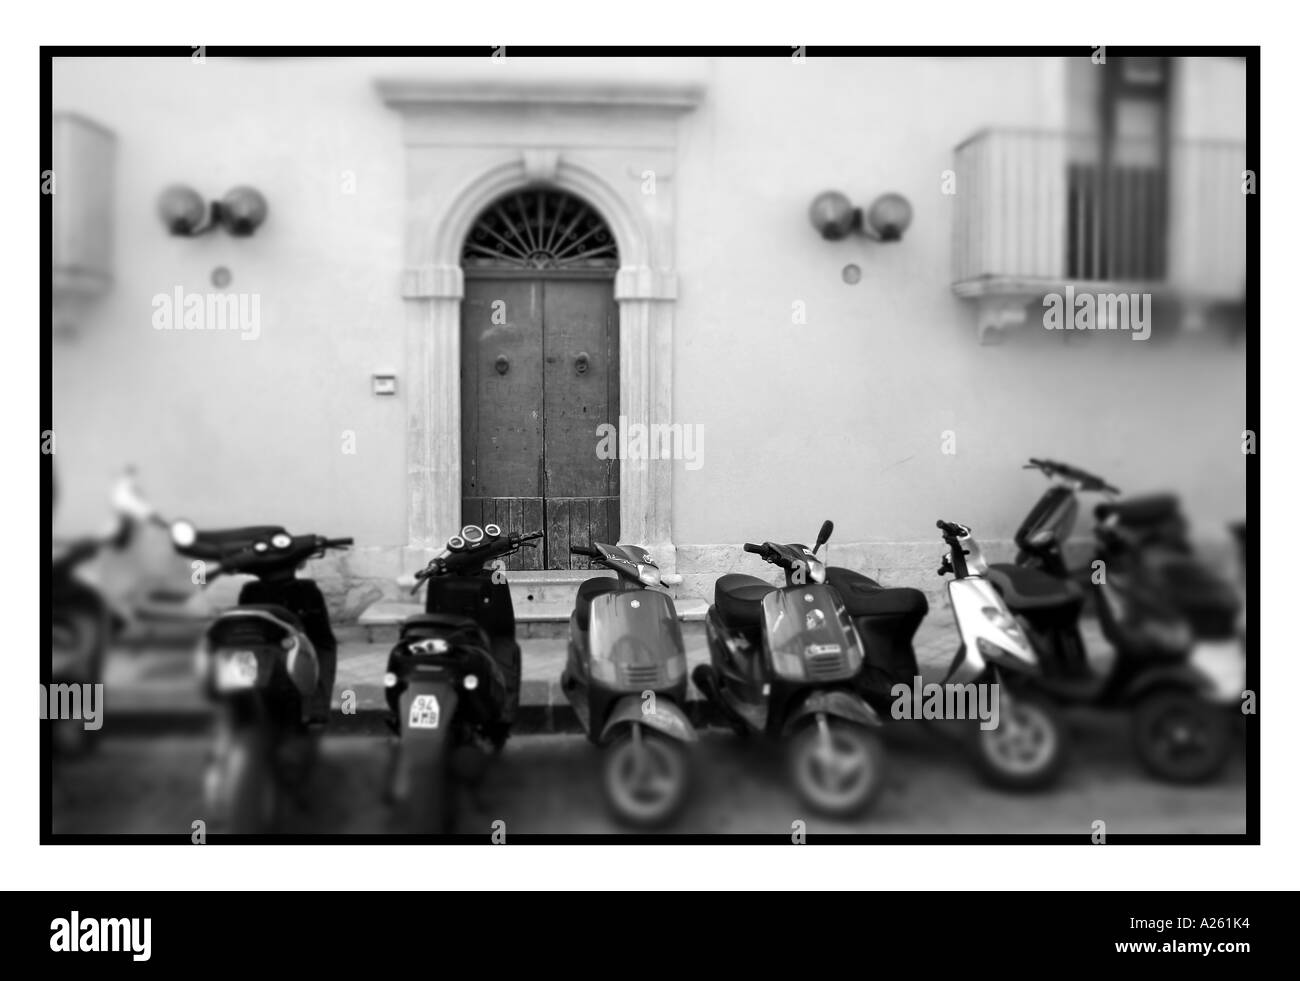 Motorroller geparkt vor einem Haus in Noto. Südliche Sizilien. Italien. B&W Foto Stockfoto